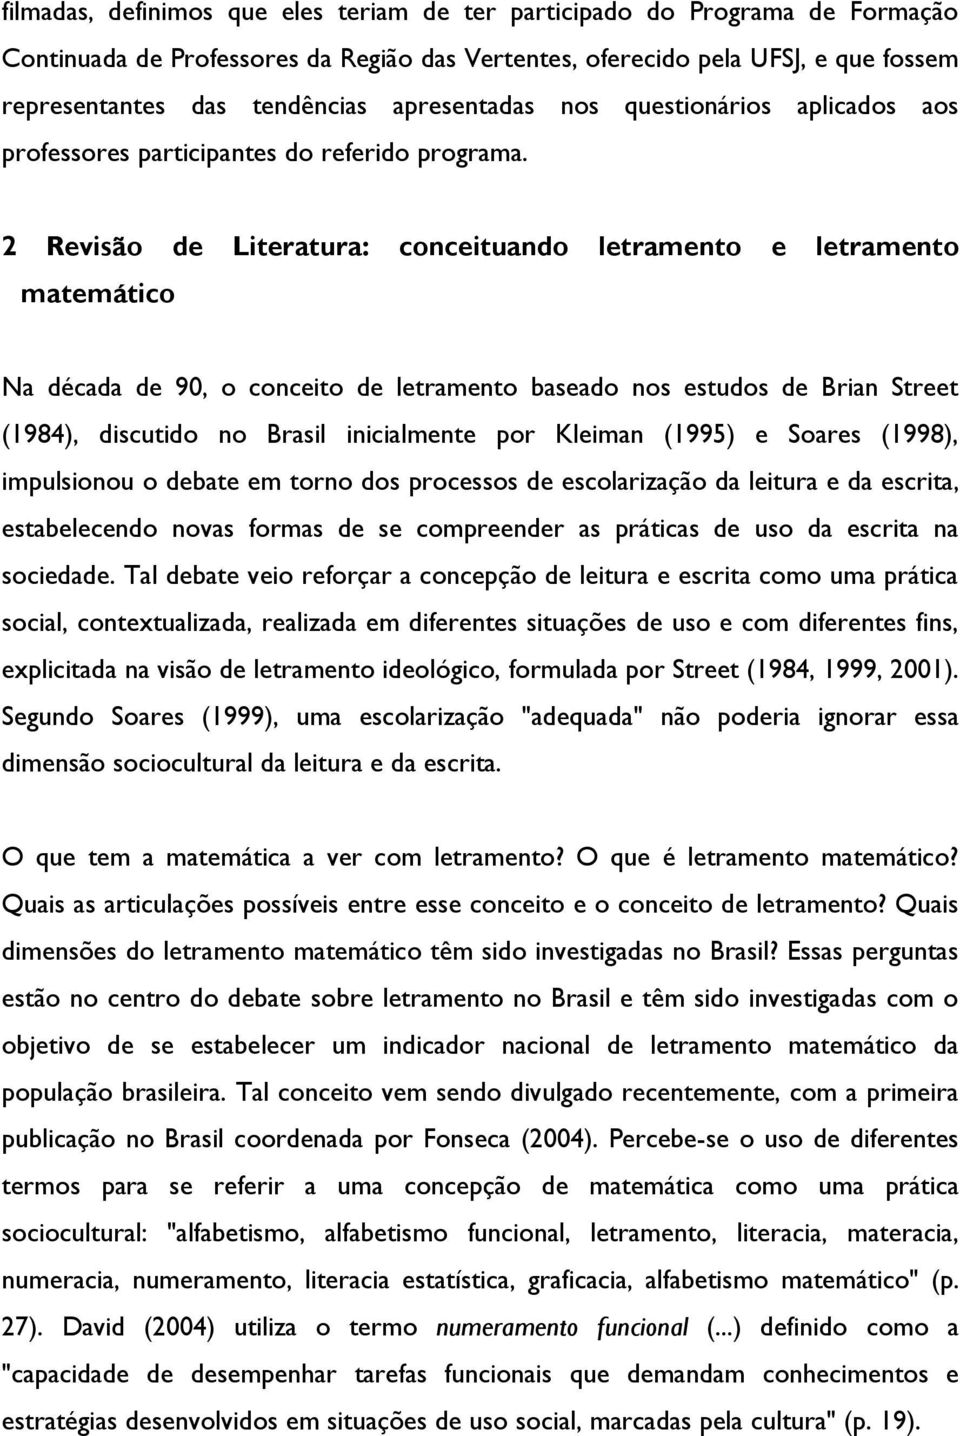 2 Revisão de Literatura: conceituando letramento e letramento matemático Na década de 90, o conceito de letramento baseado nos estudos de Brian Street (1984), discutido no Brasil inicialmente por